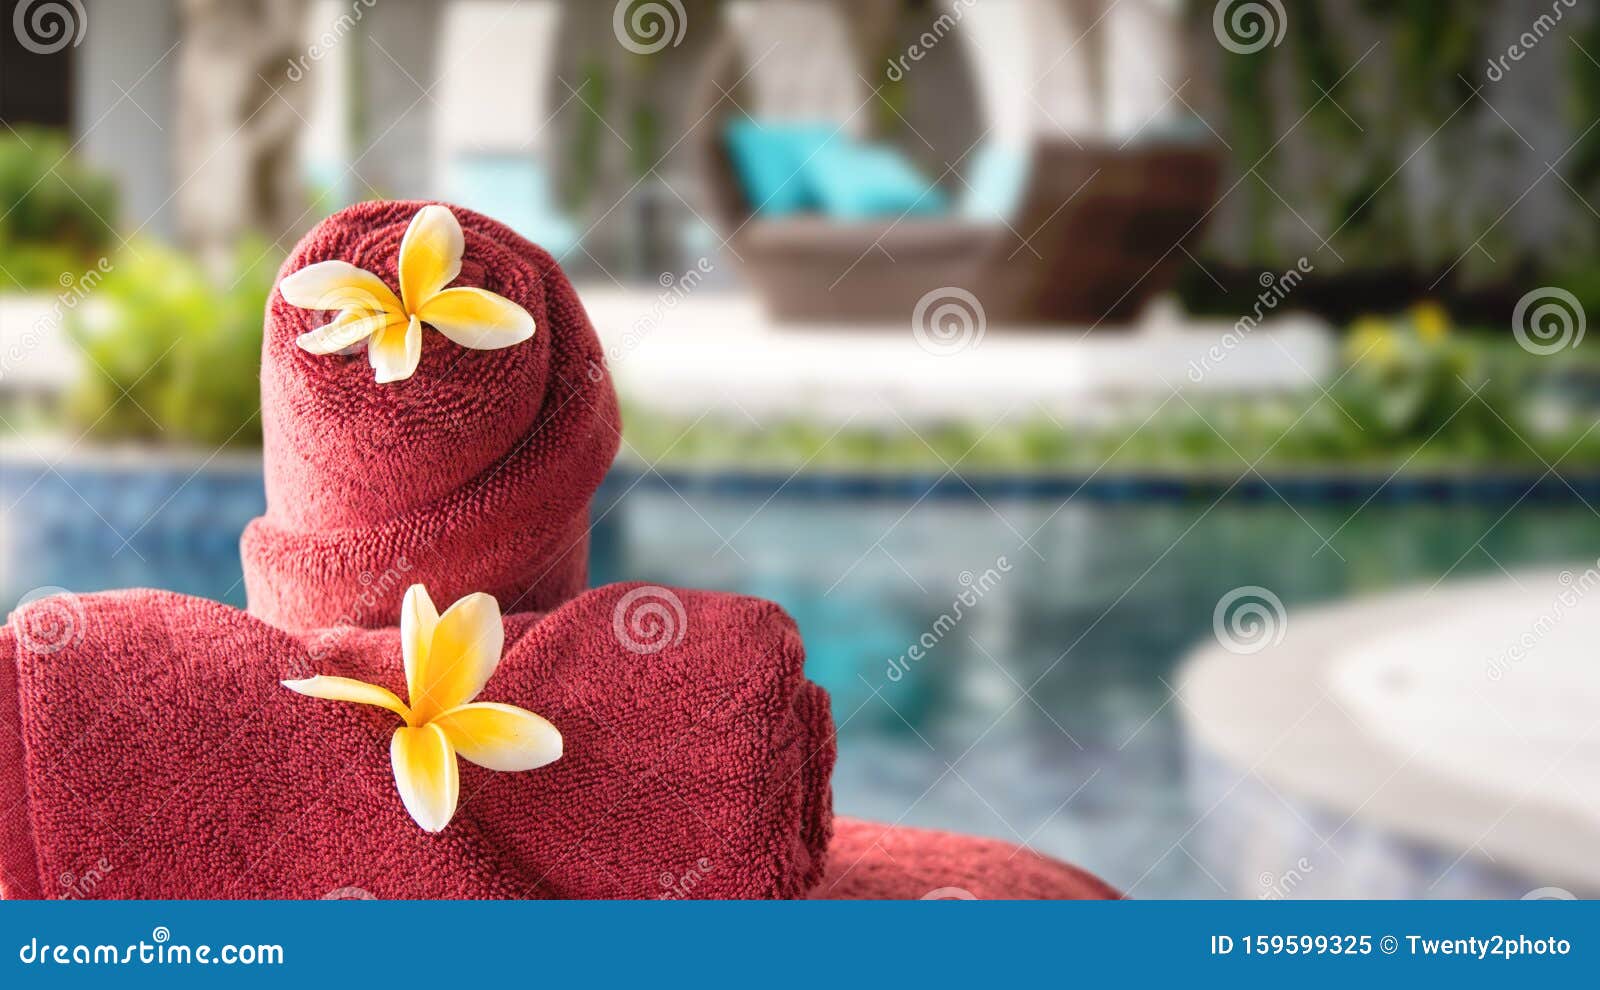 Ghế nằm ngoài trời resort spa với khăn tắm và hoa: Bạn muốn cảm nhận làn gió biển và tiếng sóng vỗ? Hãy thư giãn tại resort spa với ghế nằm ngoài trời xinh đẹp, được trang trí bằng khăn tắm mềm mại và những bông hoa xinh xắn. Đây đích thực là nơi bạn muốn dành thời gian thư giãn hoàn hảo nhất. 